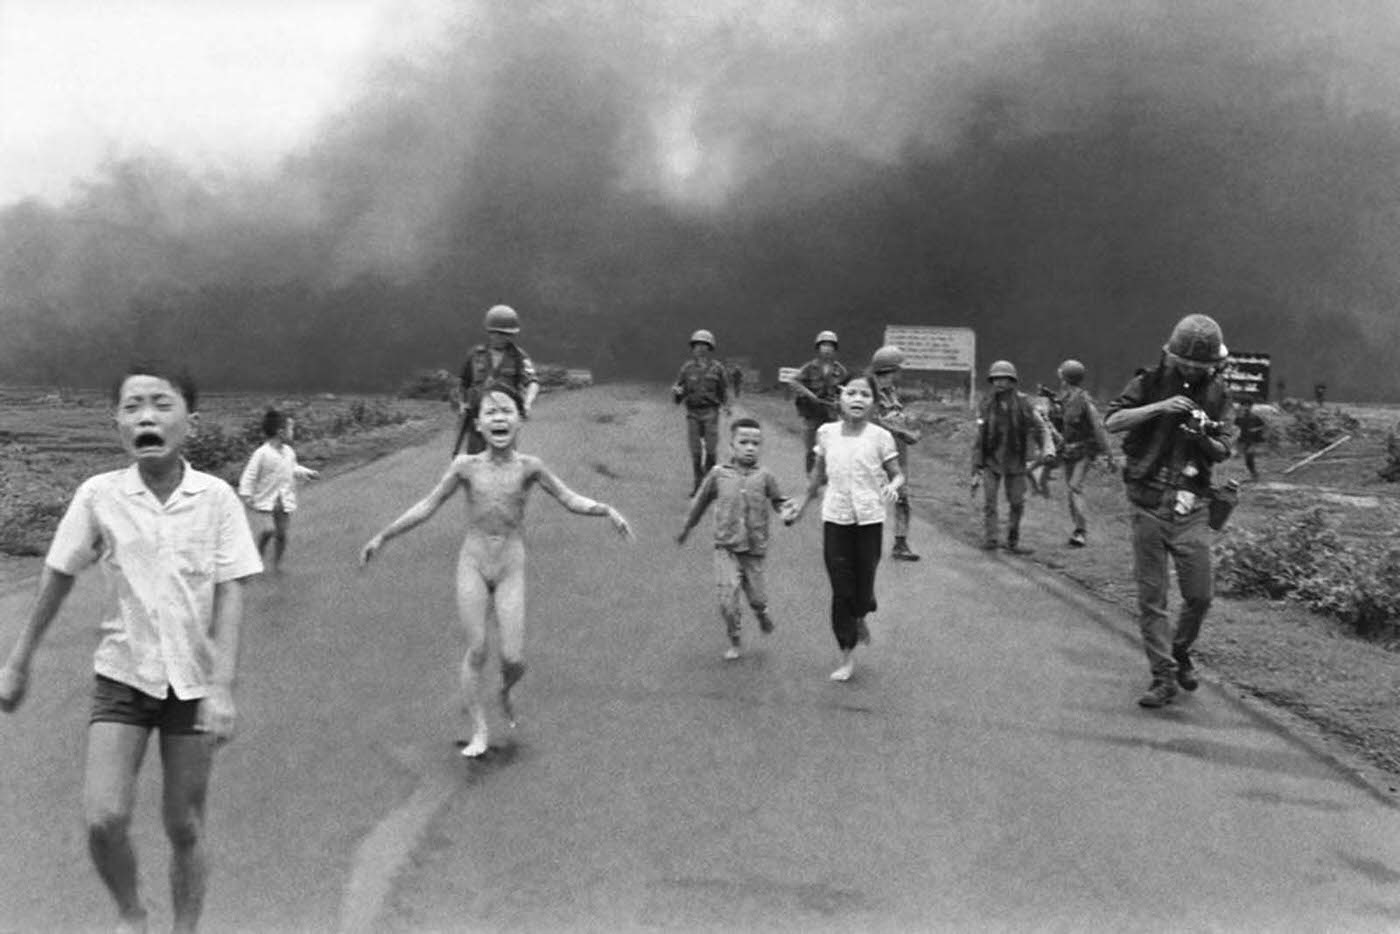 The Terror of War, 1972